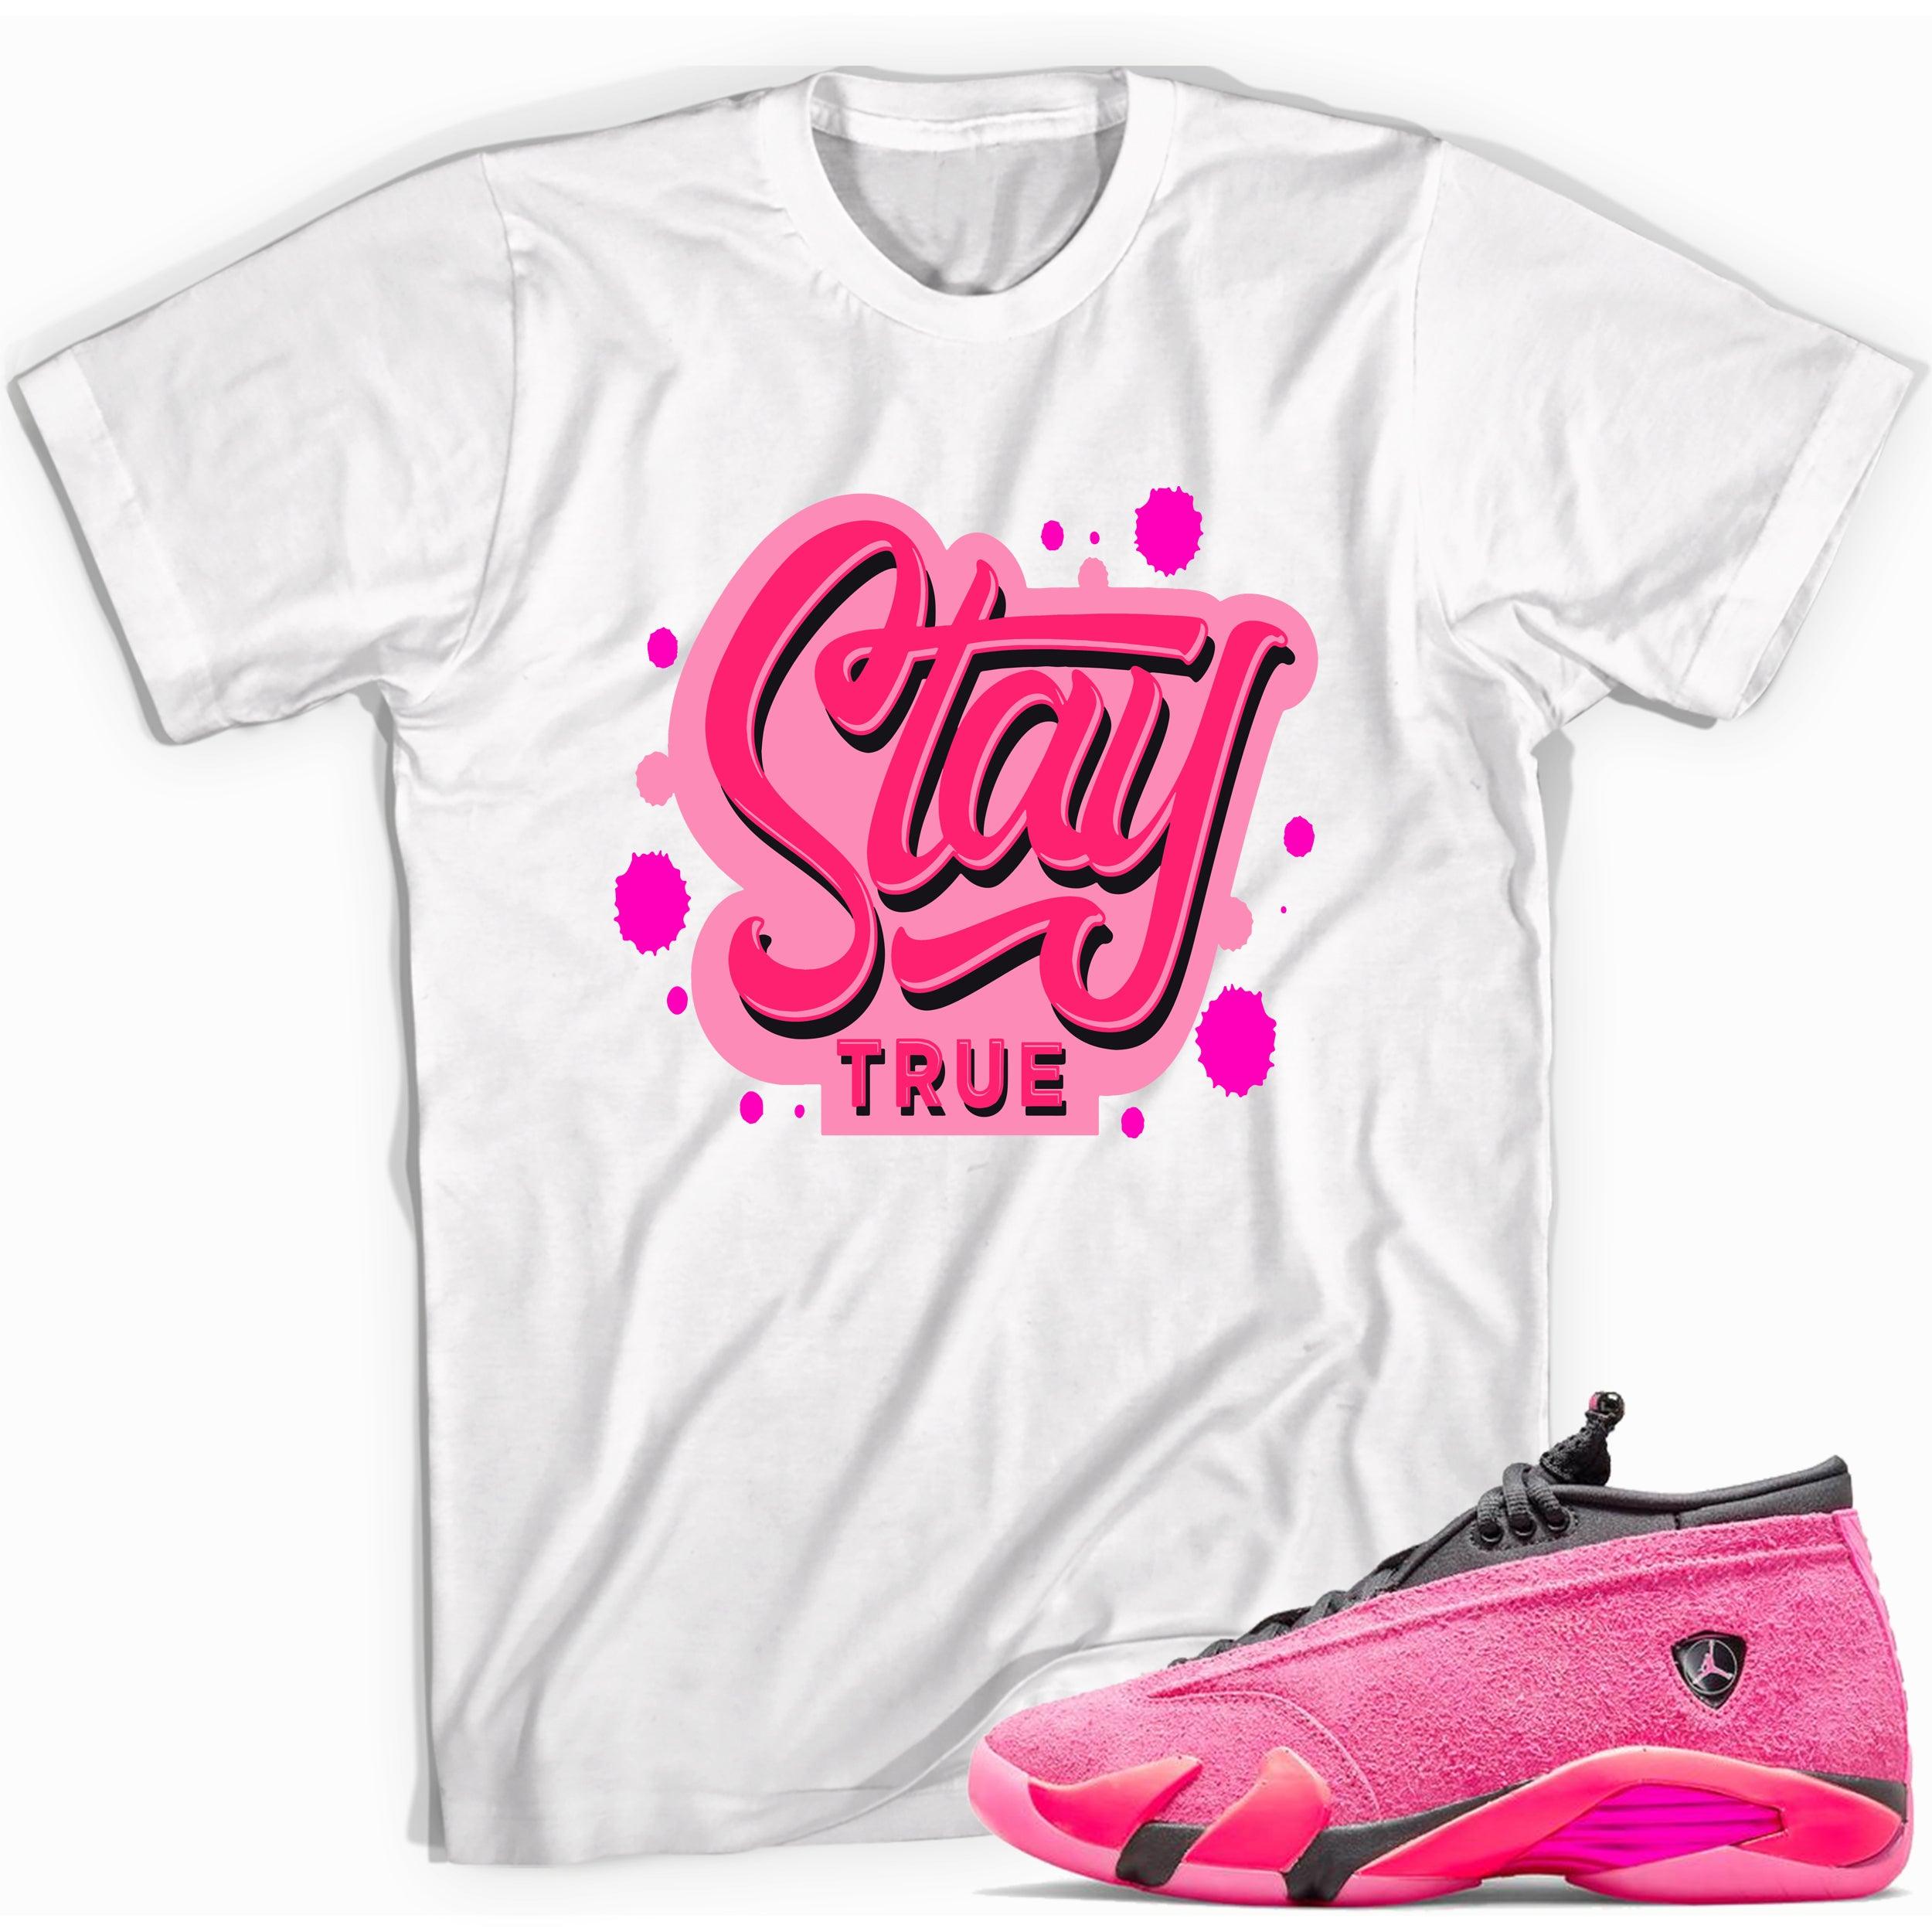 Stay True Shirt Jordan 14 Low Shocking Pink photo